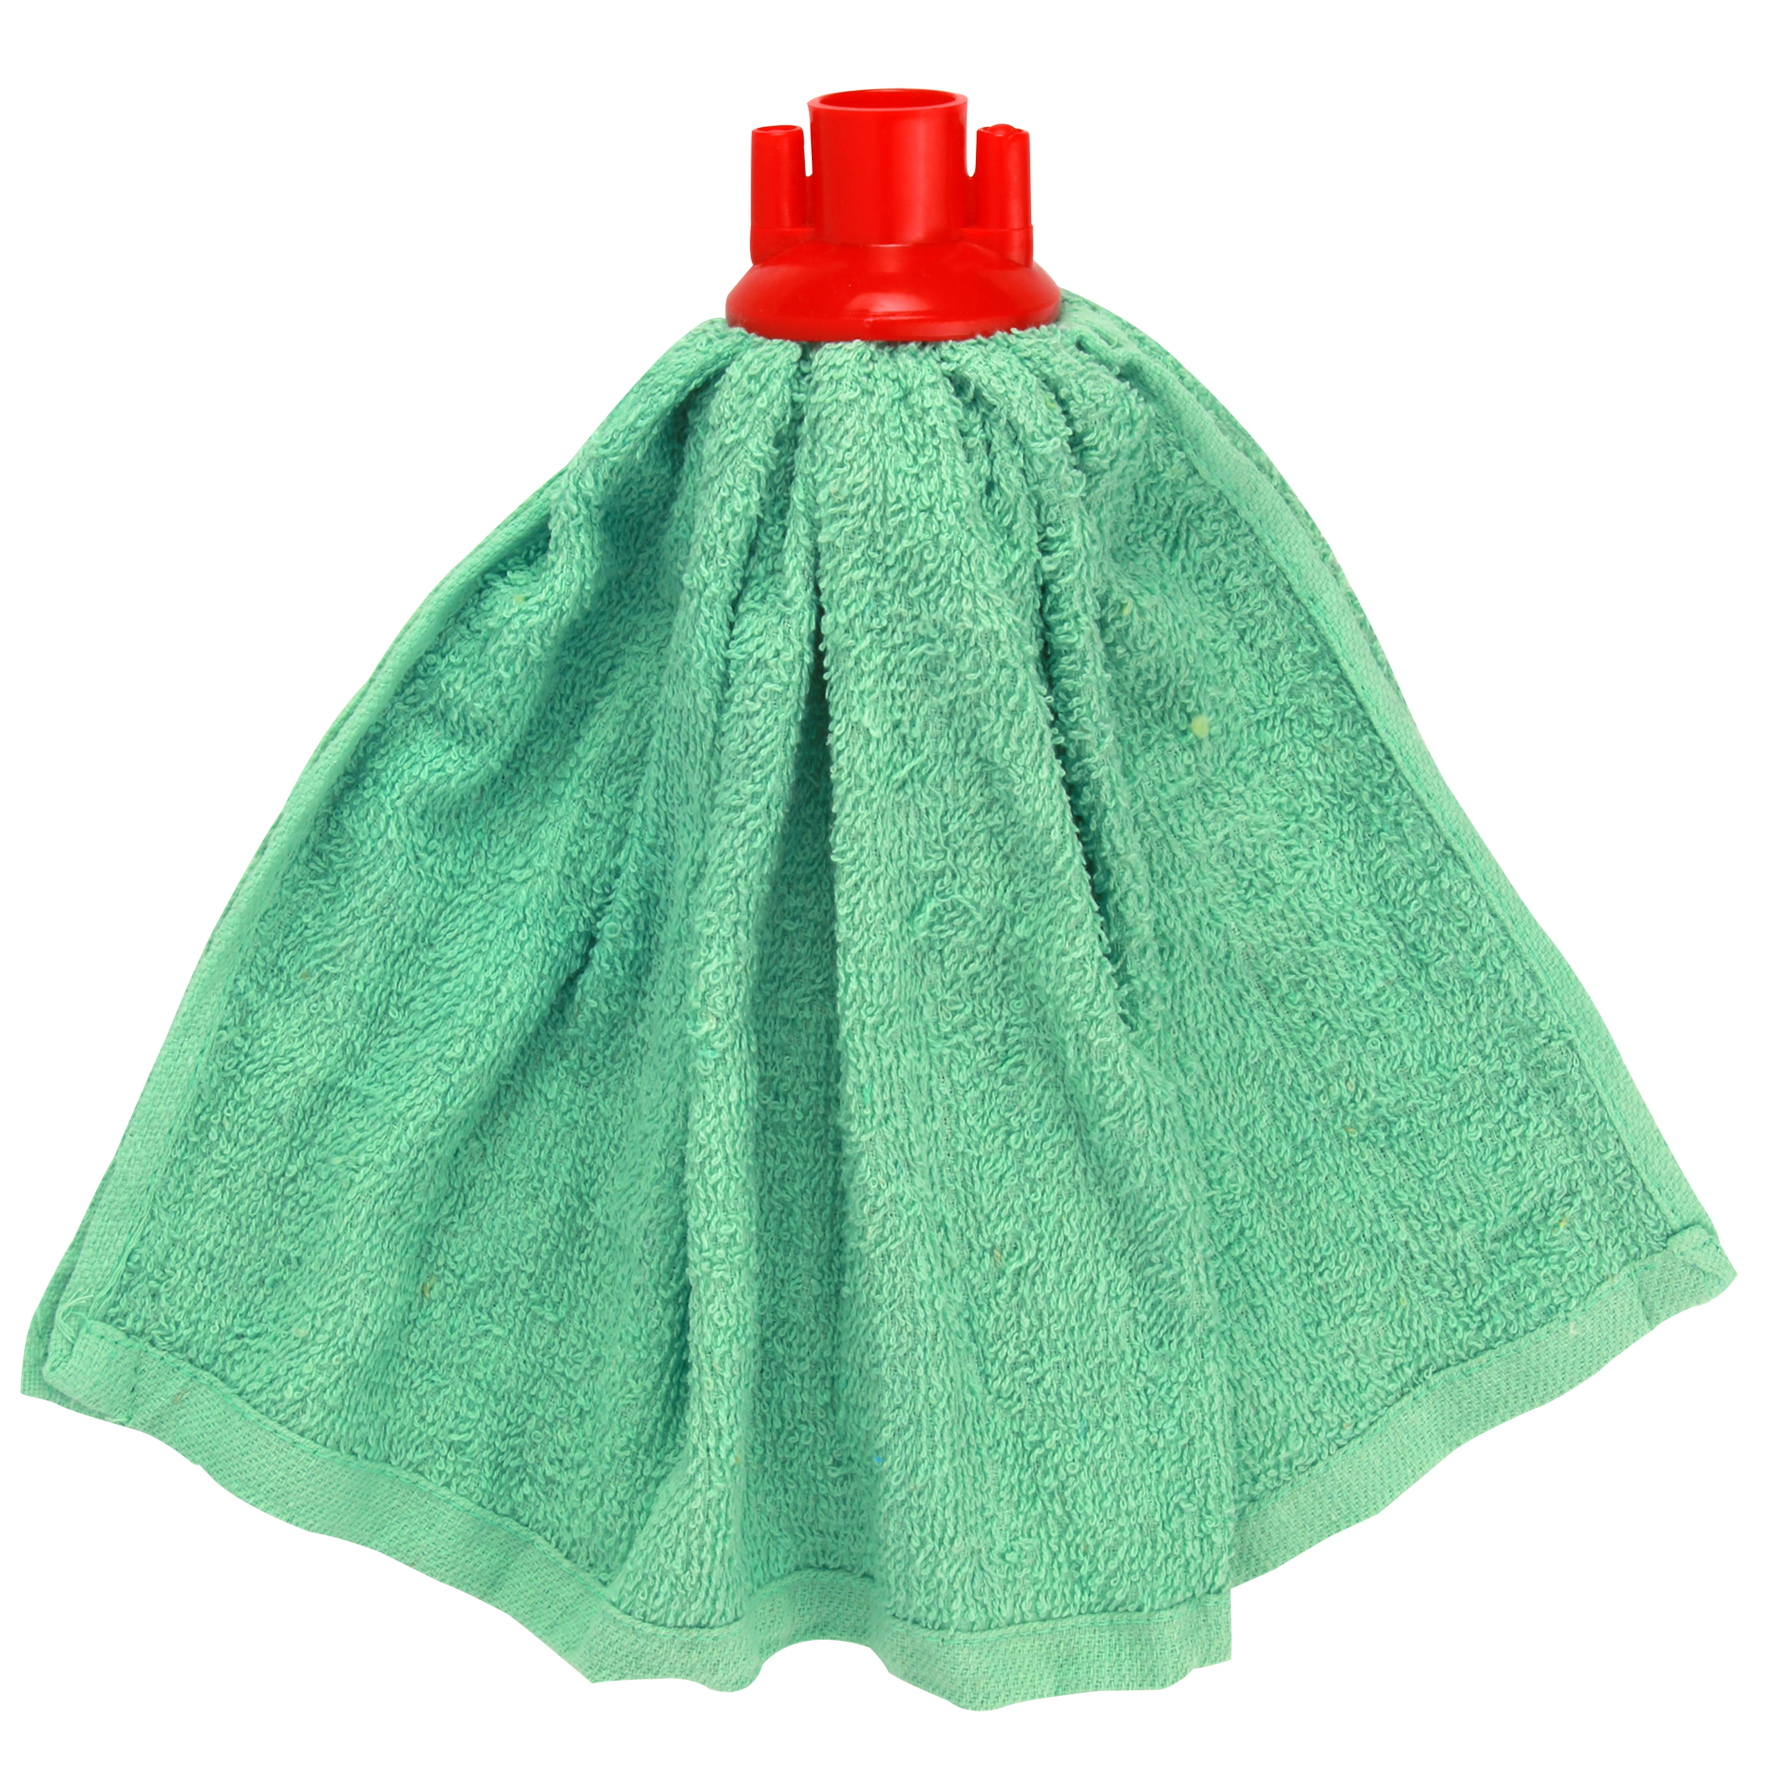 Σφουγγαρίστρα οικιακή φούστα από πετσέτα, κατασκευασµένη από 100% βαµβάκι